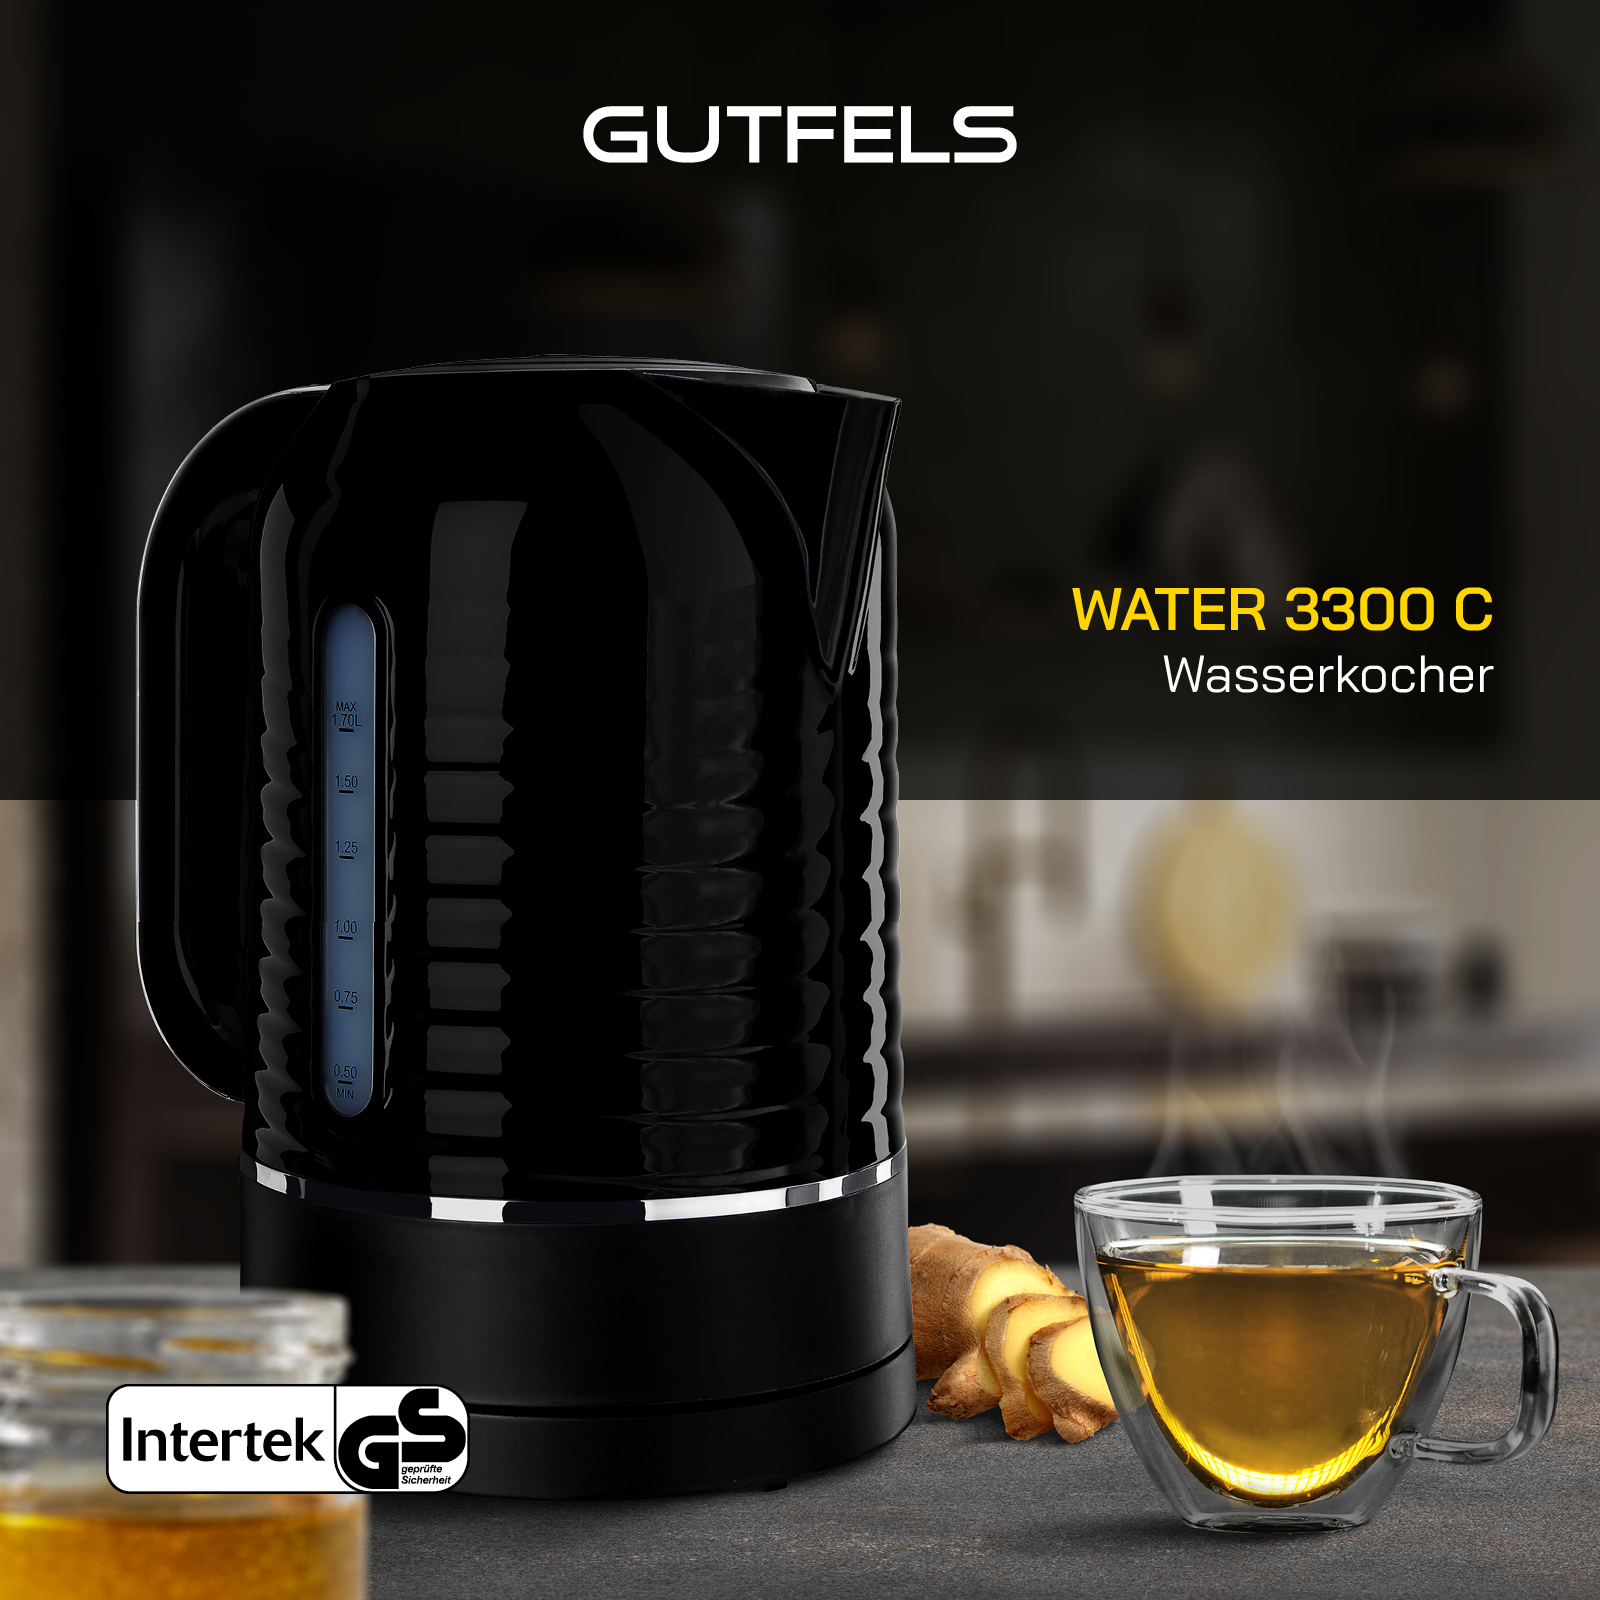 GUTFELS WATER 3300 C Wasserkocher, Schwarz